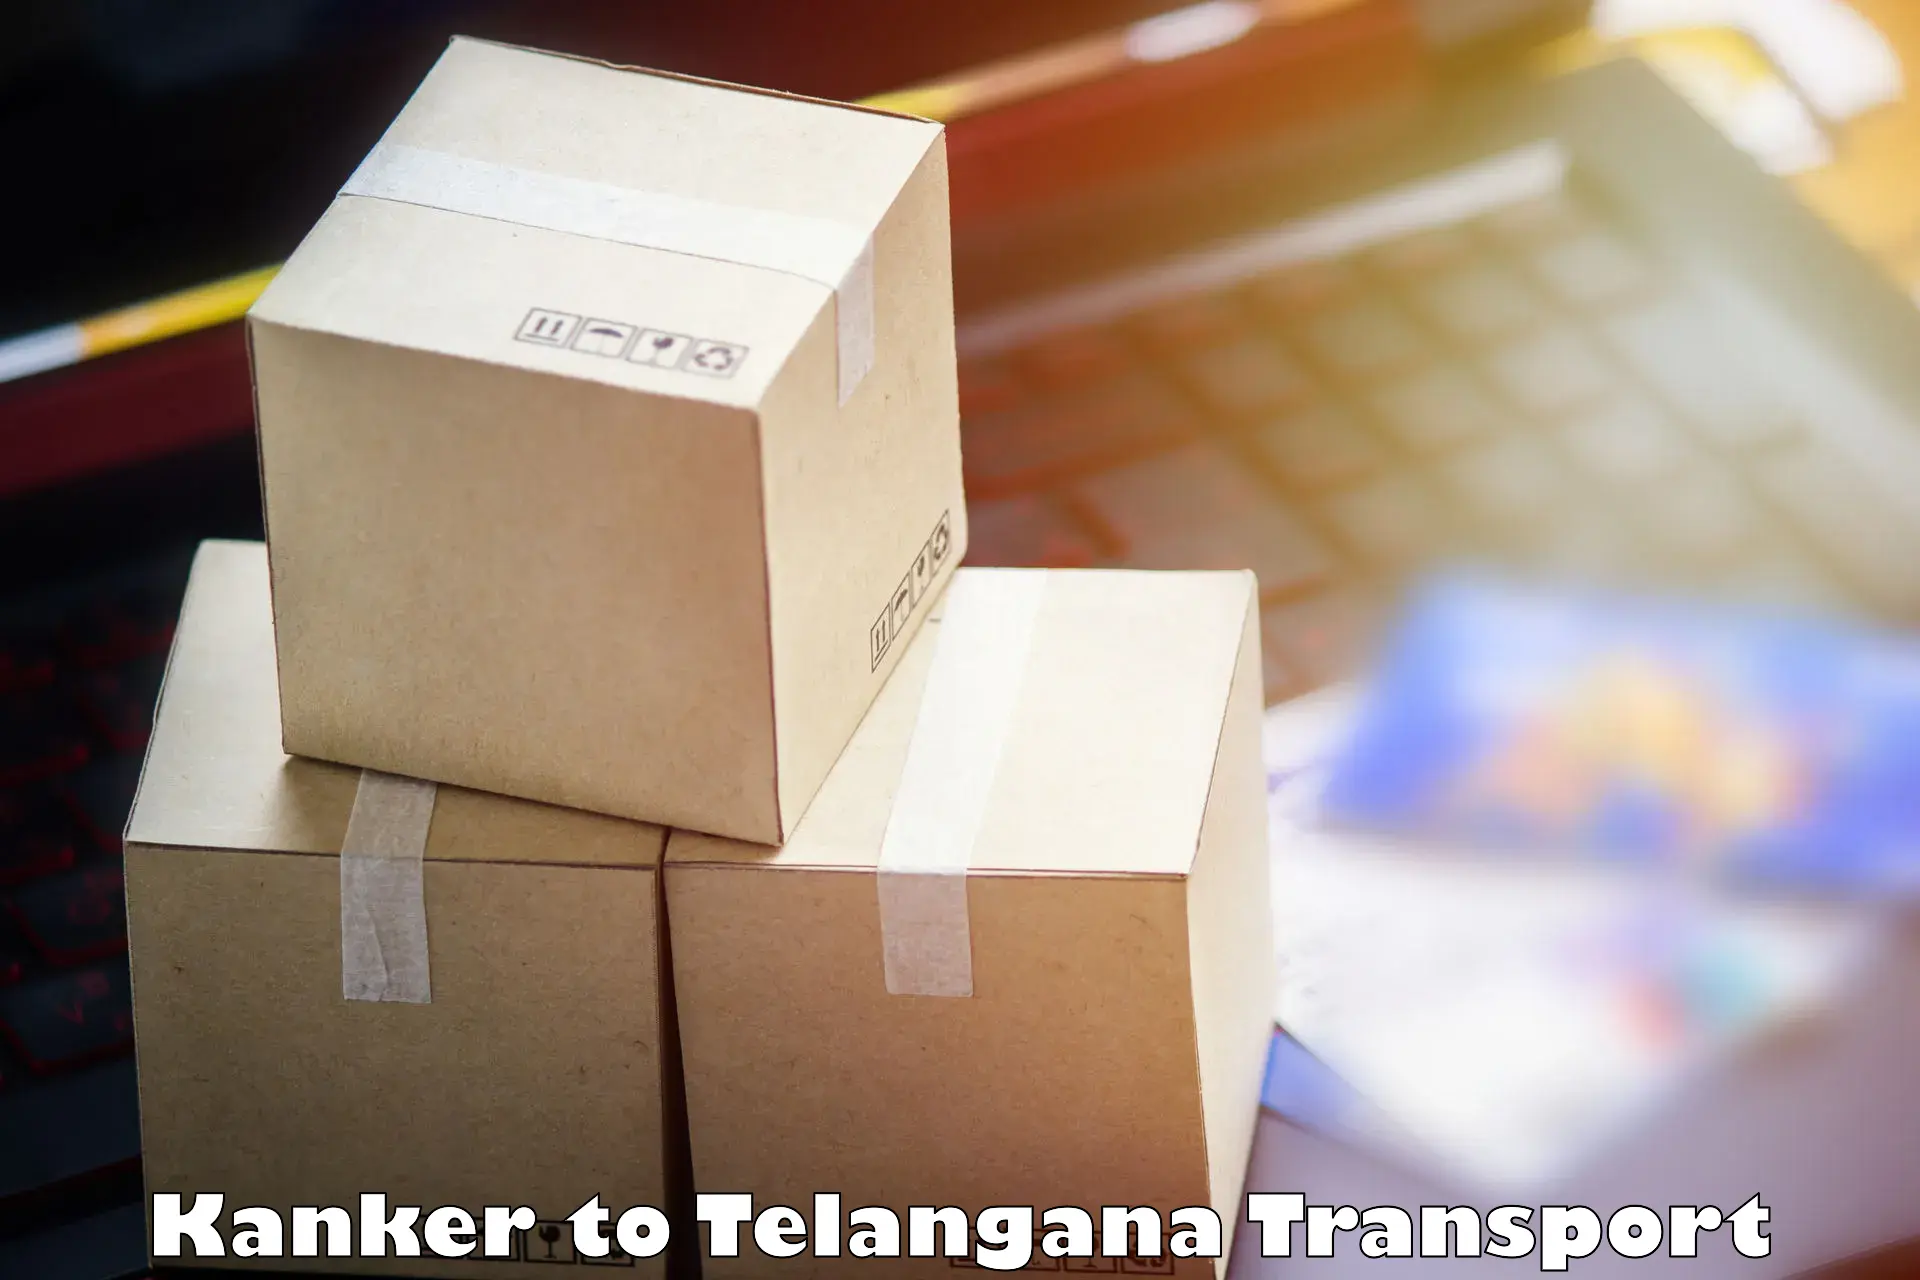 Transport in sharing Kanker to Warangal